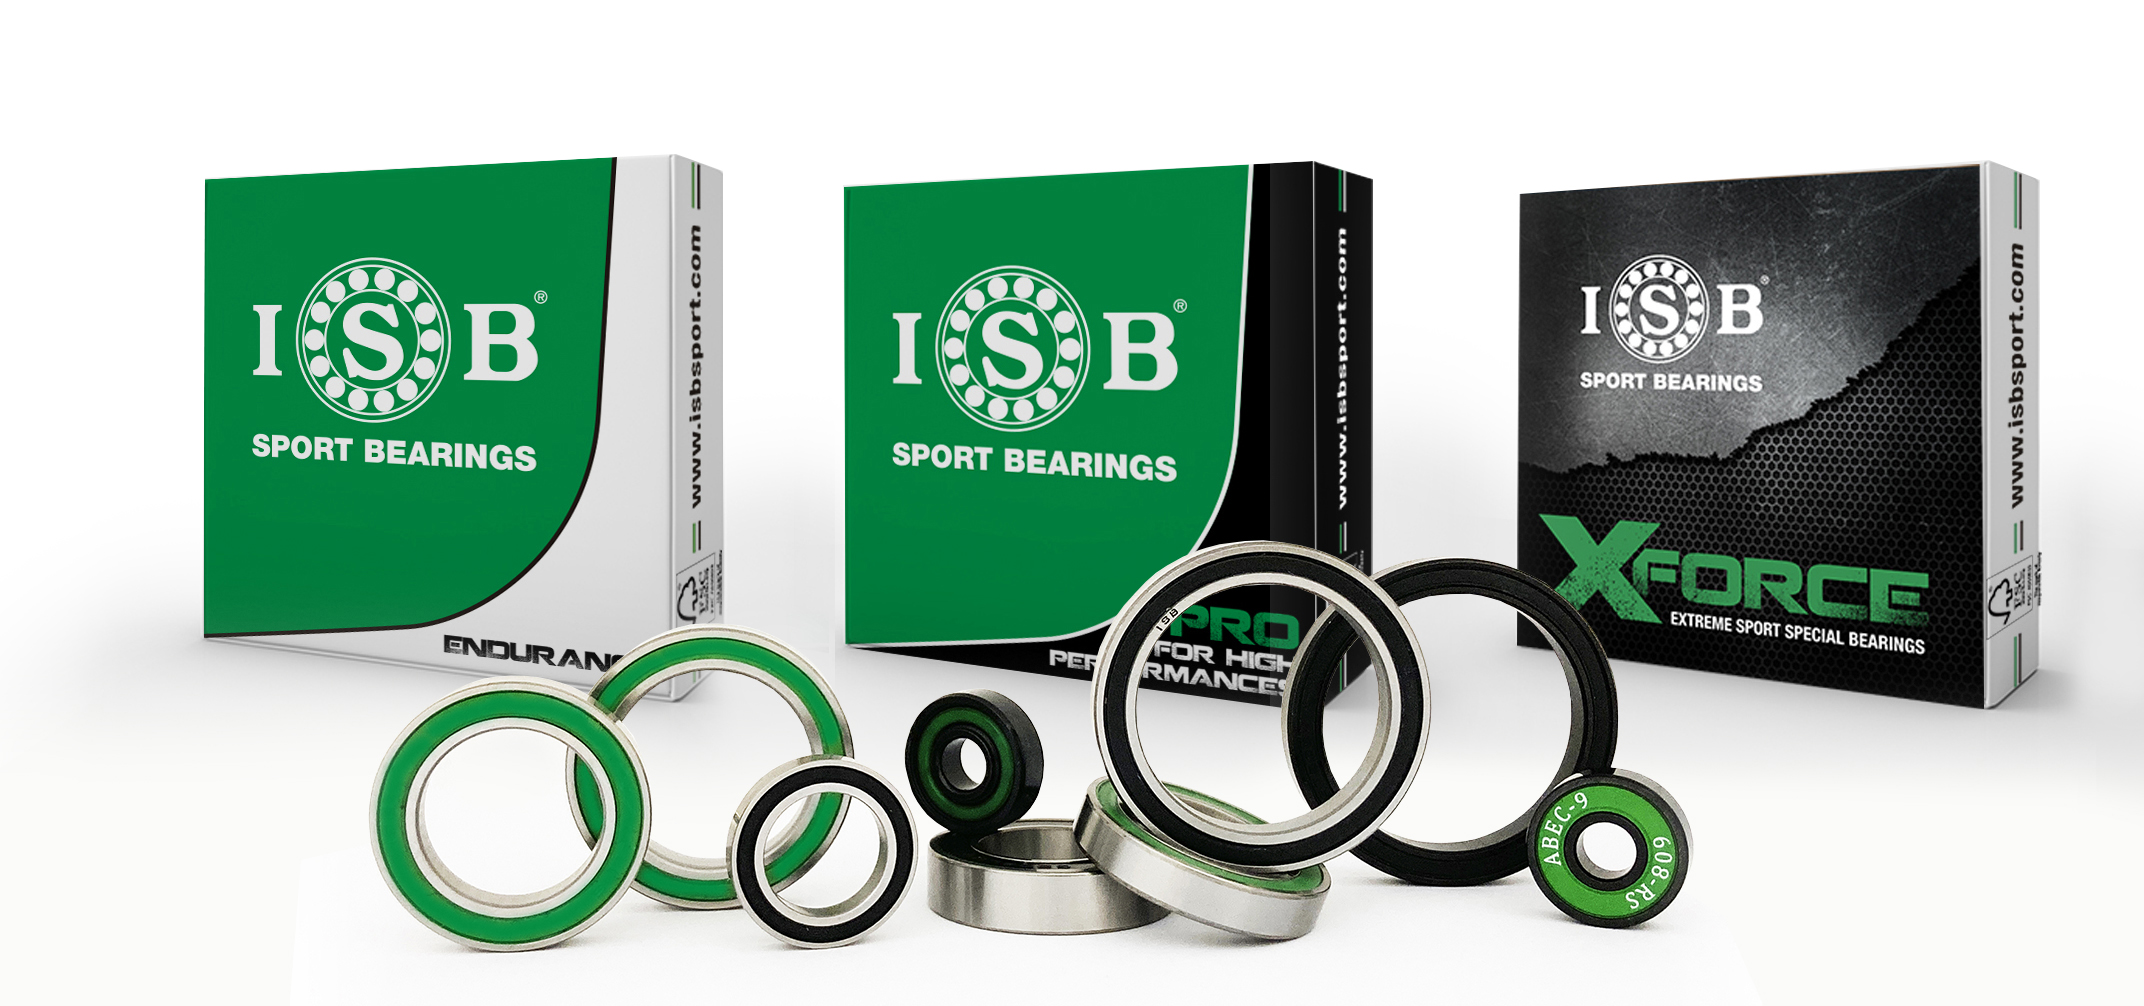 Packaging series ISB Sport